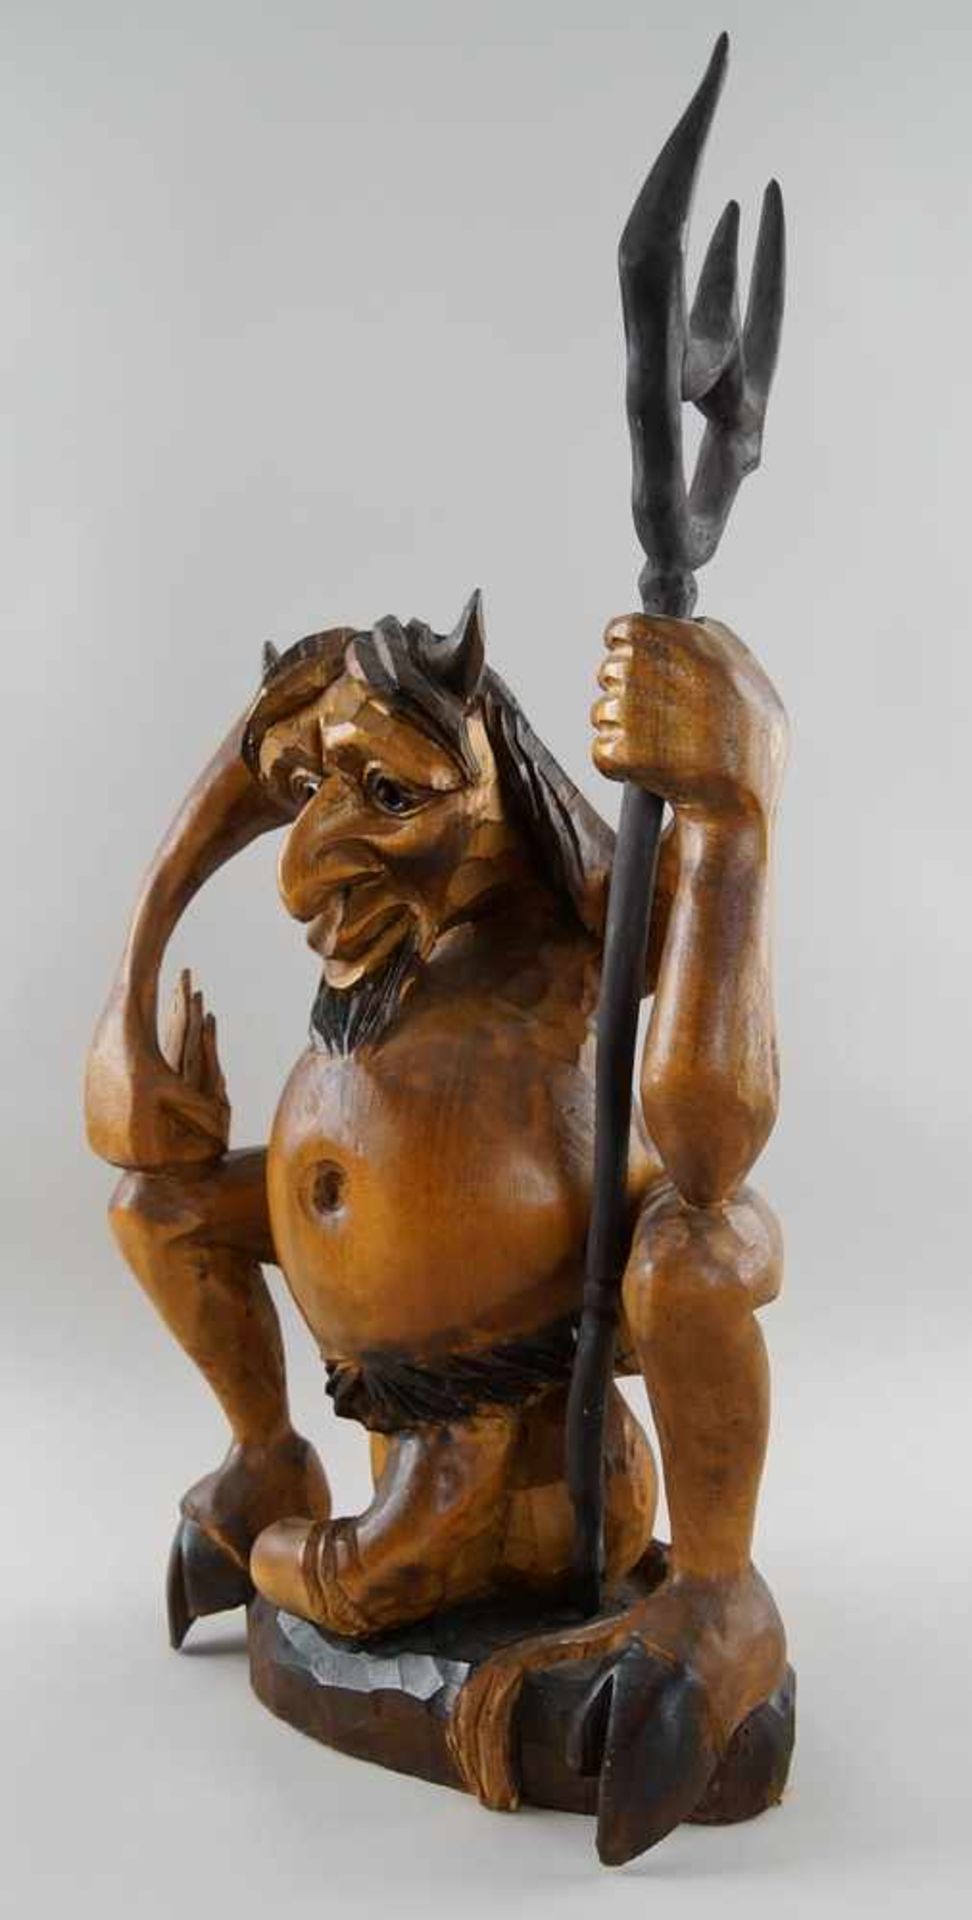 Hockender Teufel mit übergrossem Penis, Holz geschnitzt und gefasst, H 69 cm - Bild 4 aus 6